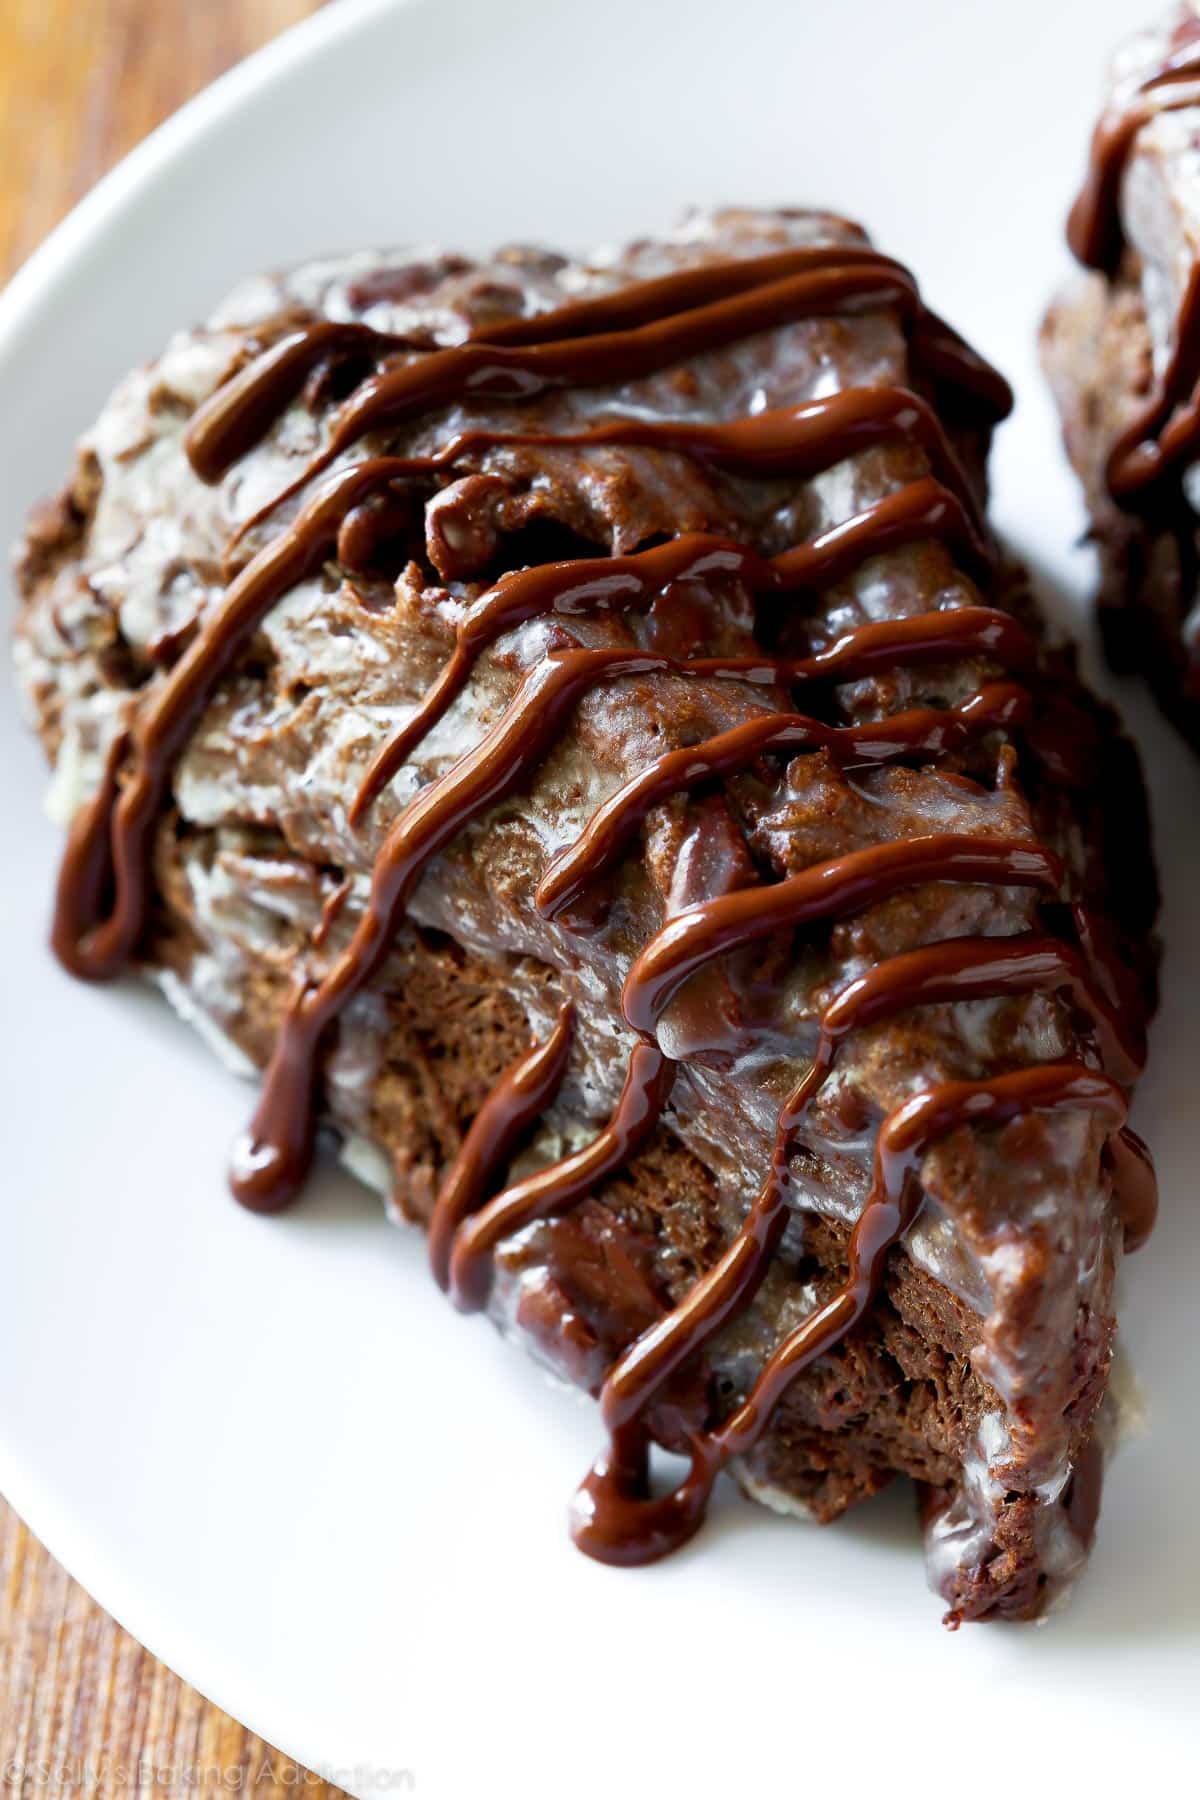 Chocolate scone with chocolate glaze